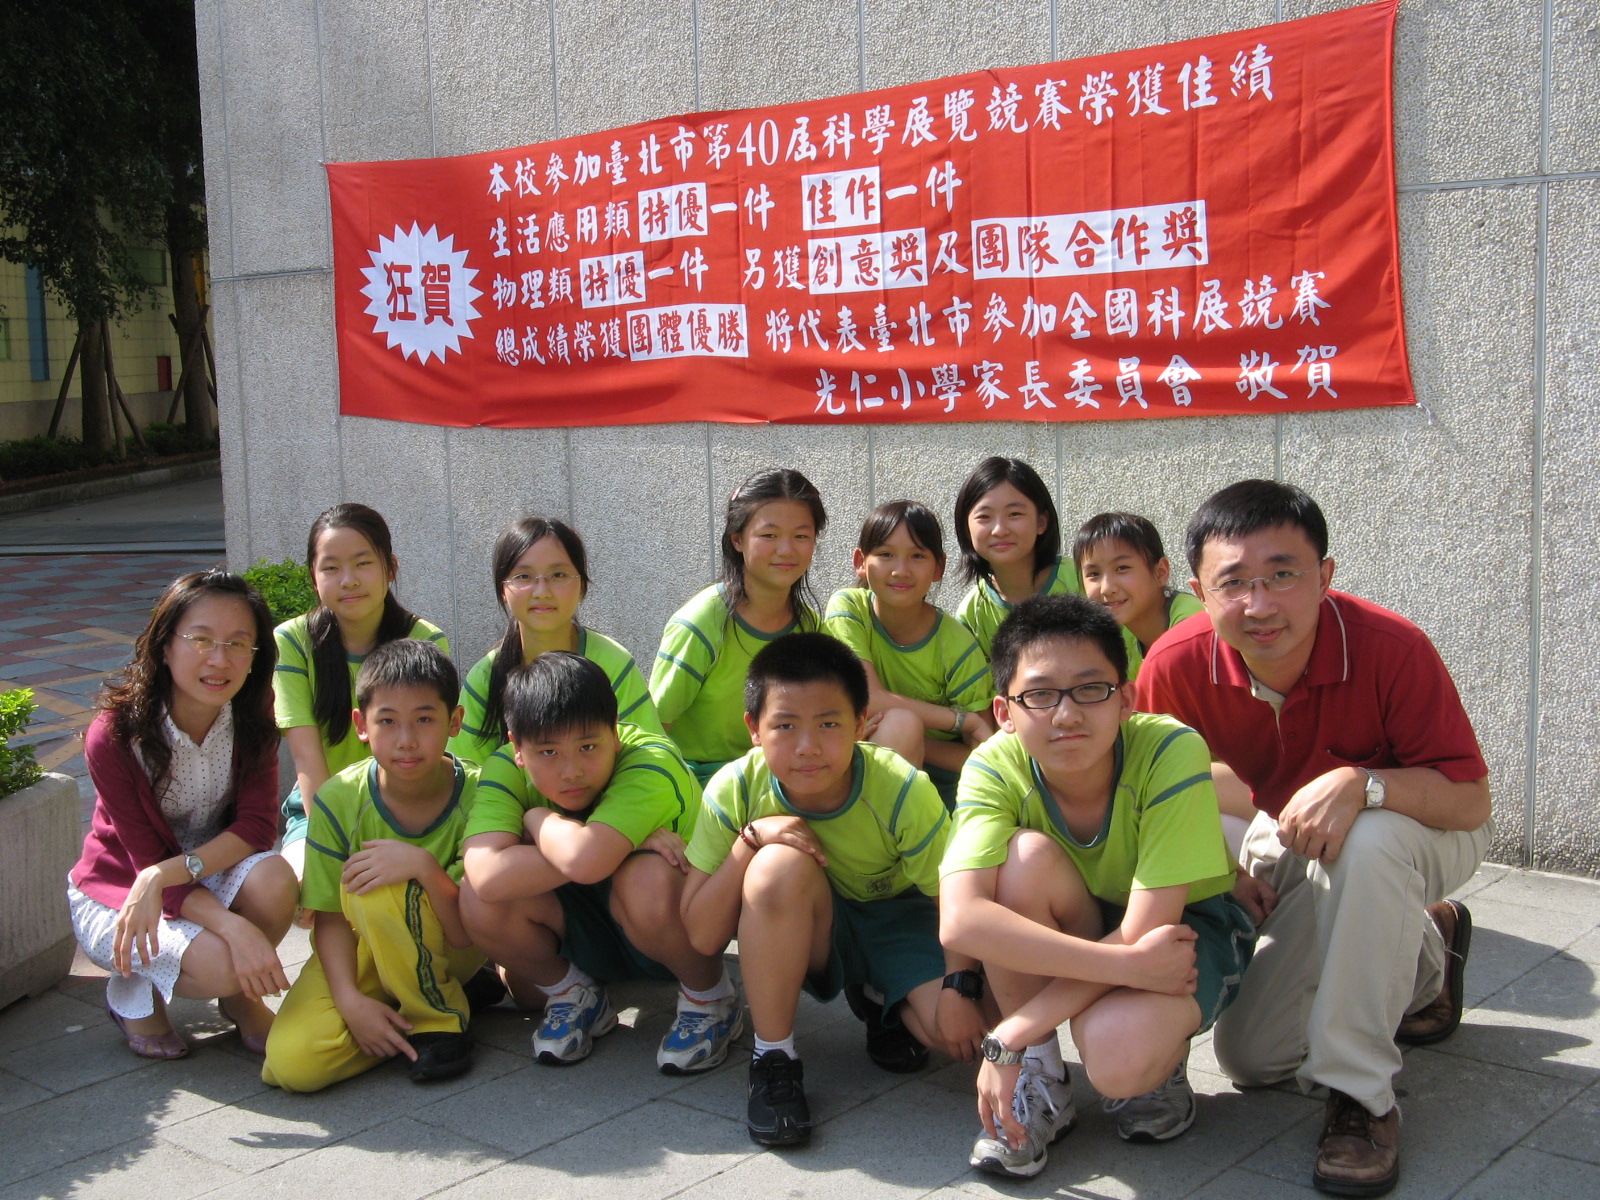 帶領學生參加臺北市第40屆科學展覽